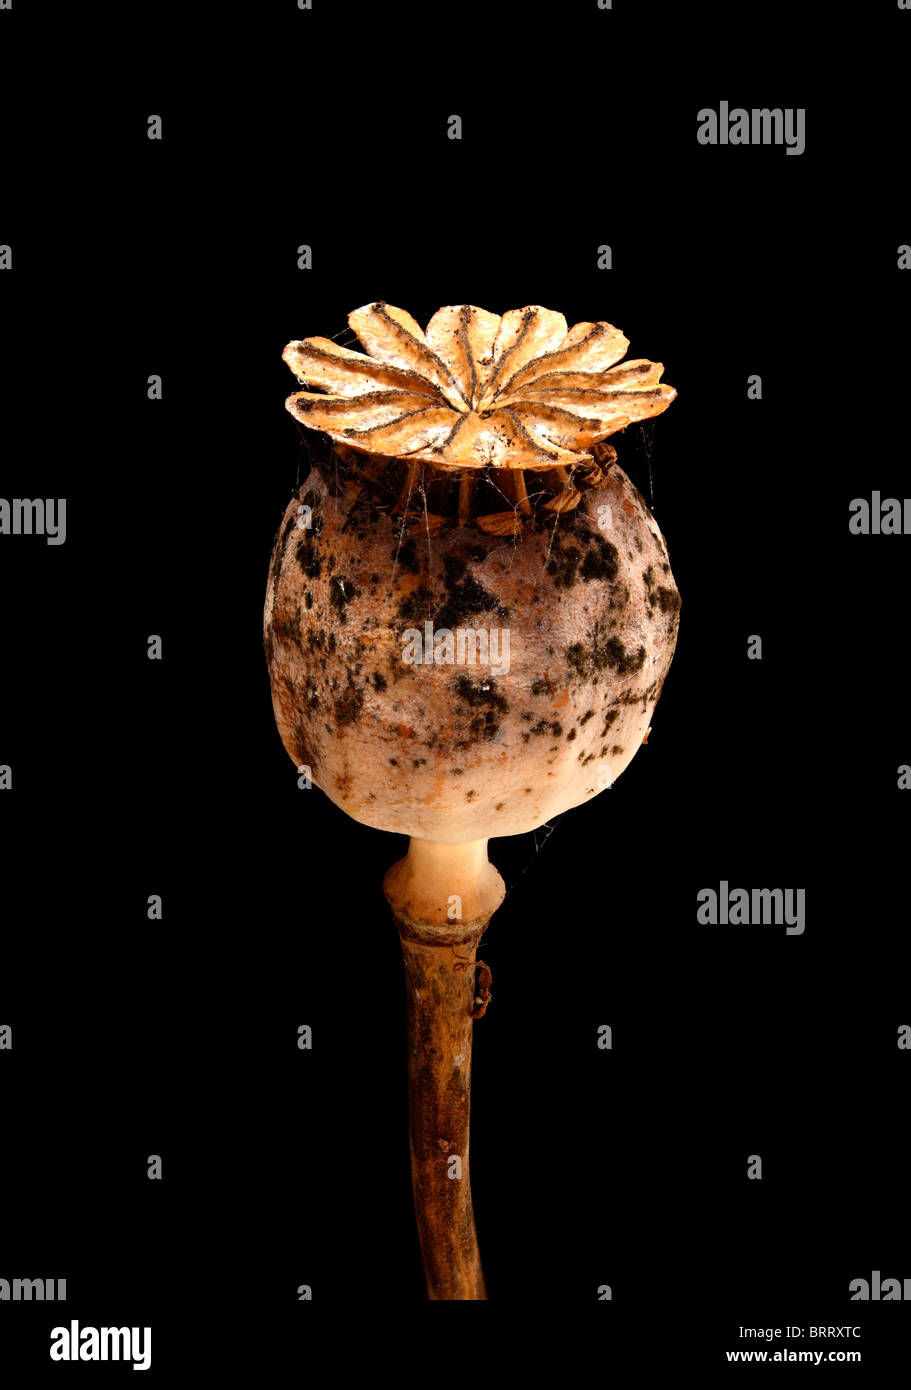 Close-up de semilla de amapola seca vieja cabeza con manchas de moho patterning contra un fondo negro oscuro Foto de stock